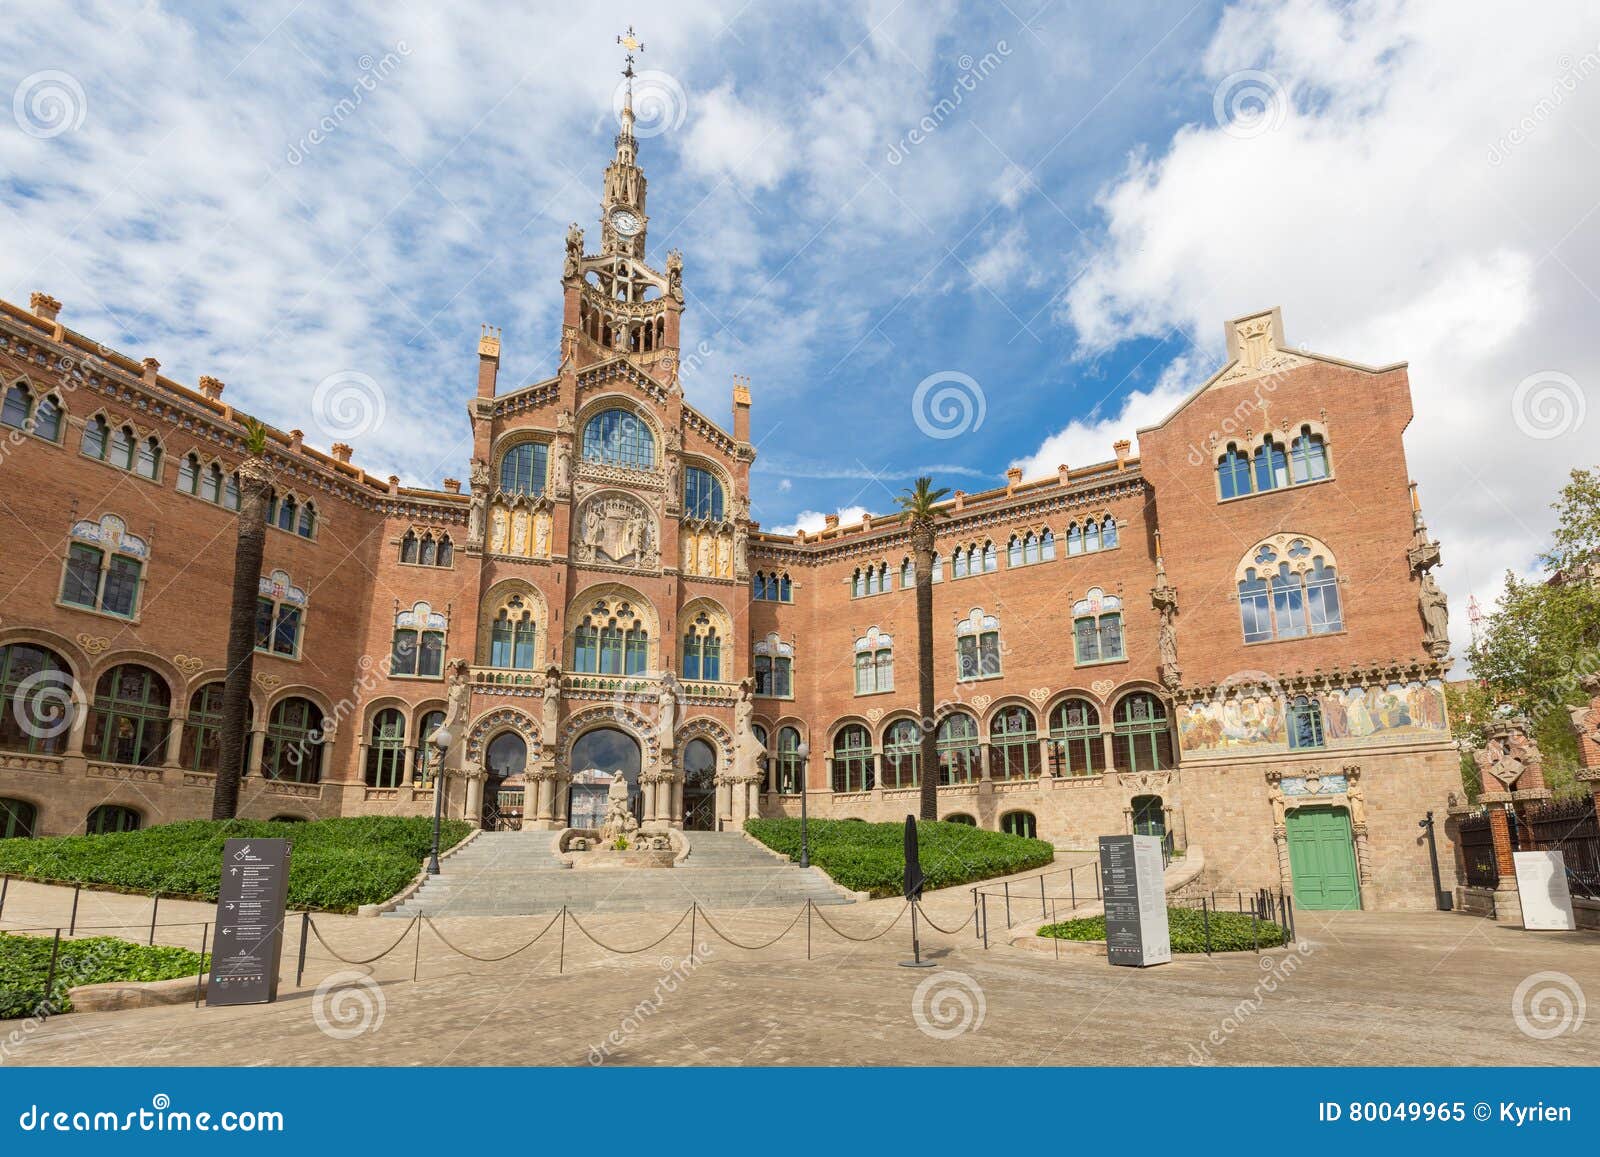 Facade of Hospital De La Santa Creu I Sant Pau in Barcelona Stock Image ...